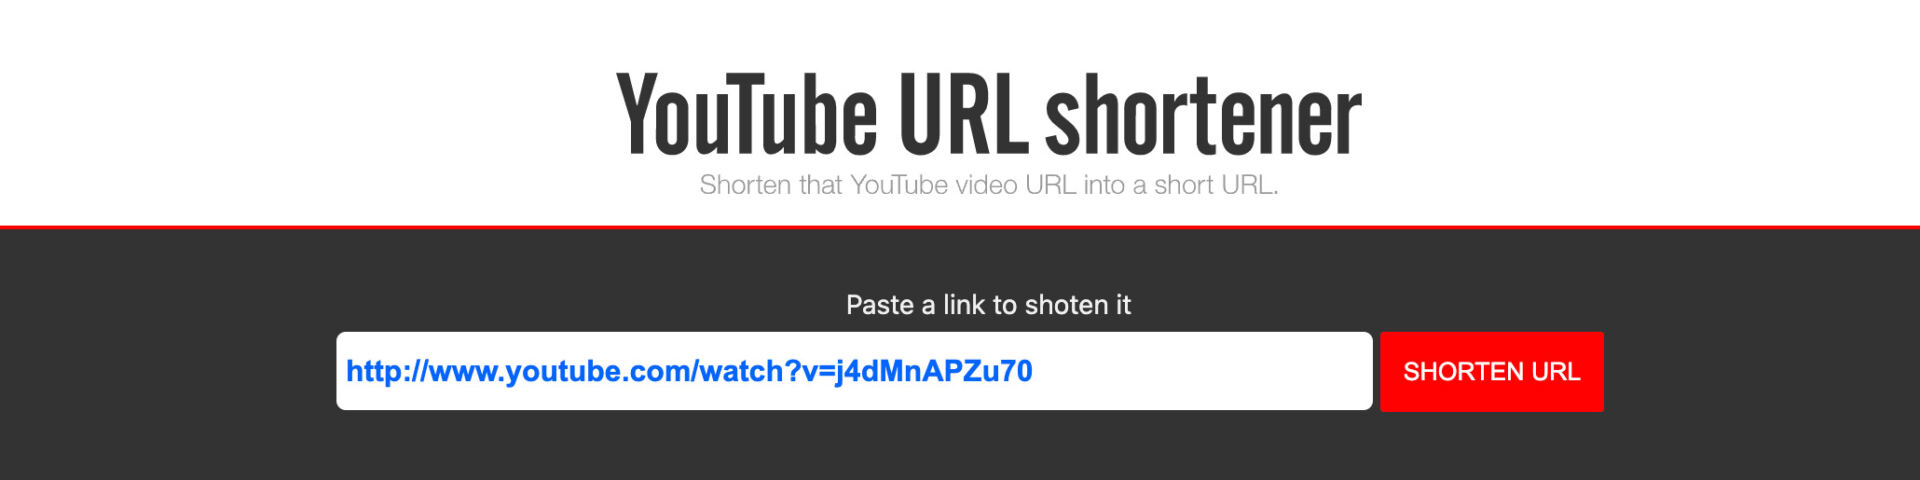 YouTube shorten URL